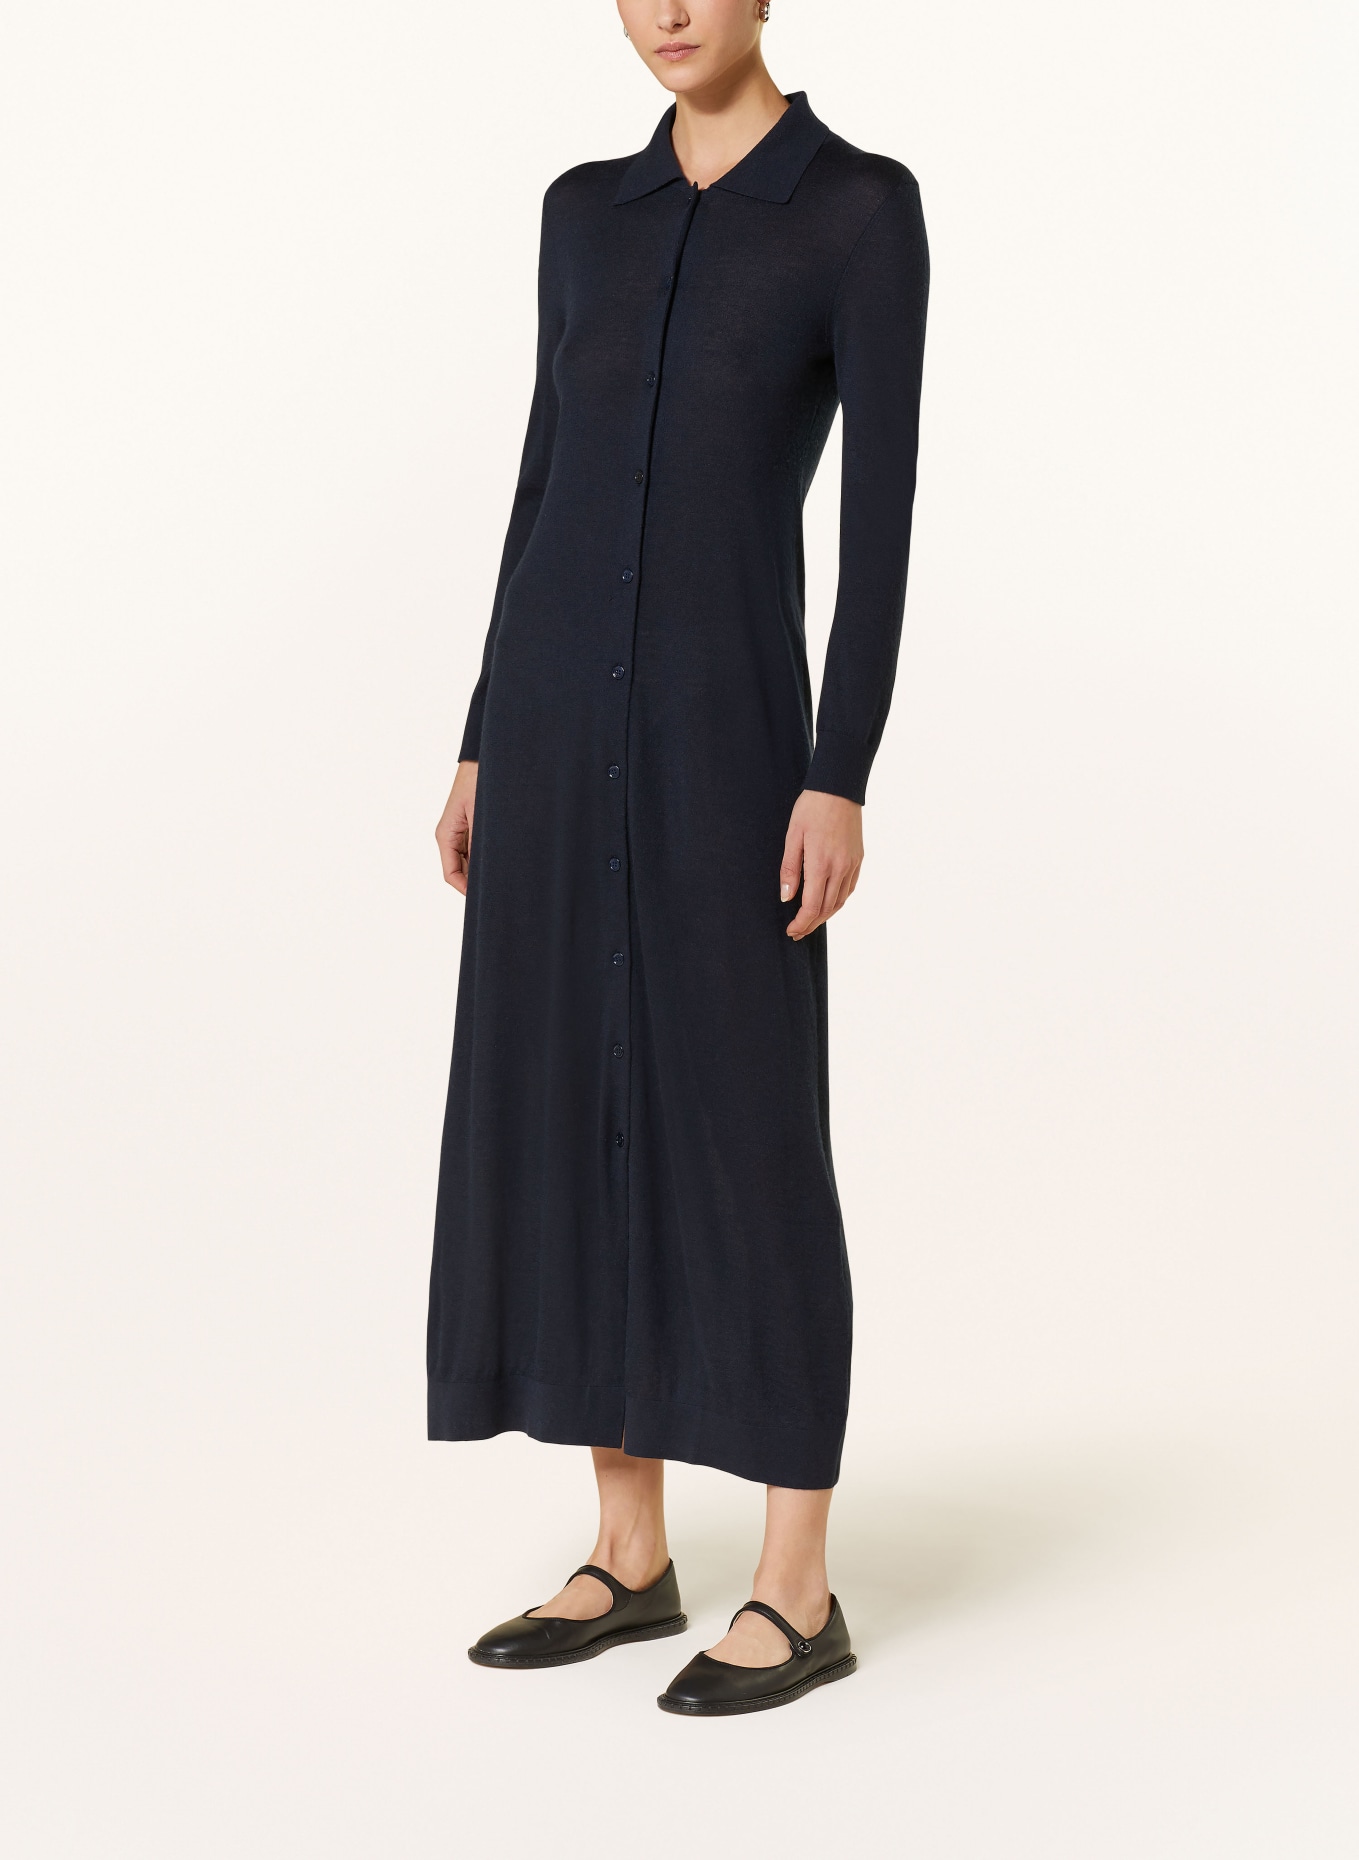 LISA YANG Cashmere knit dress, Color: DARK BLUE (Image 2)